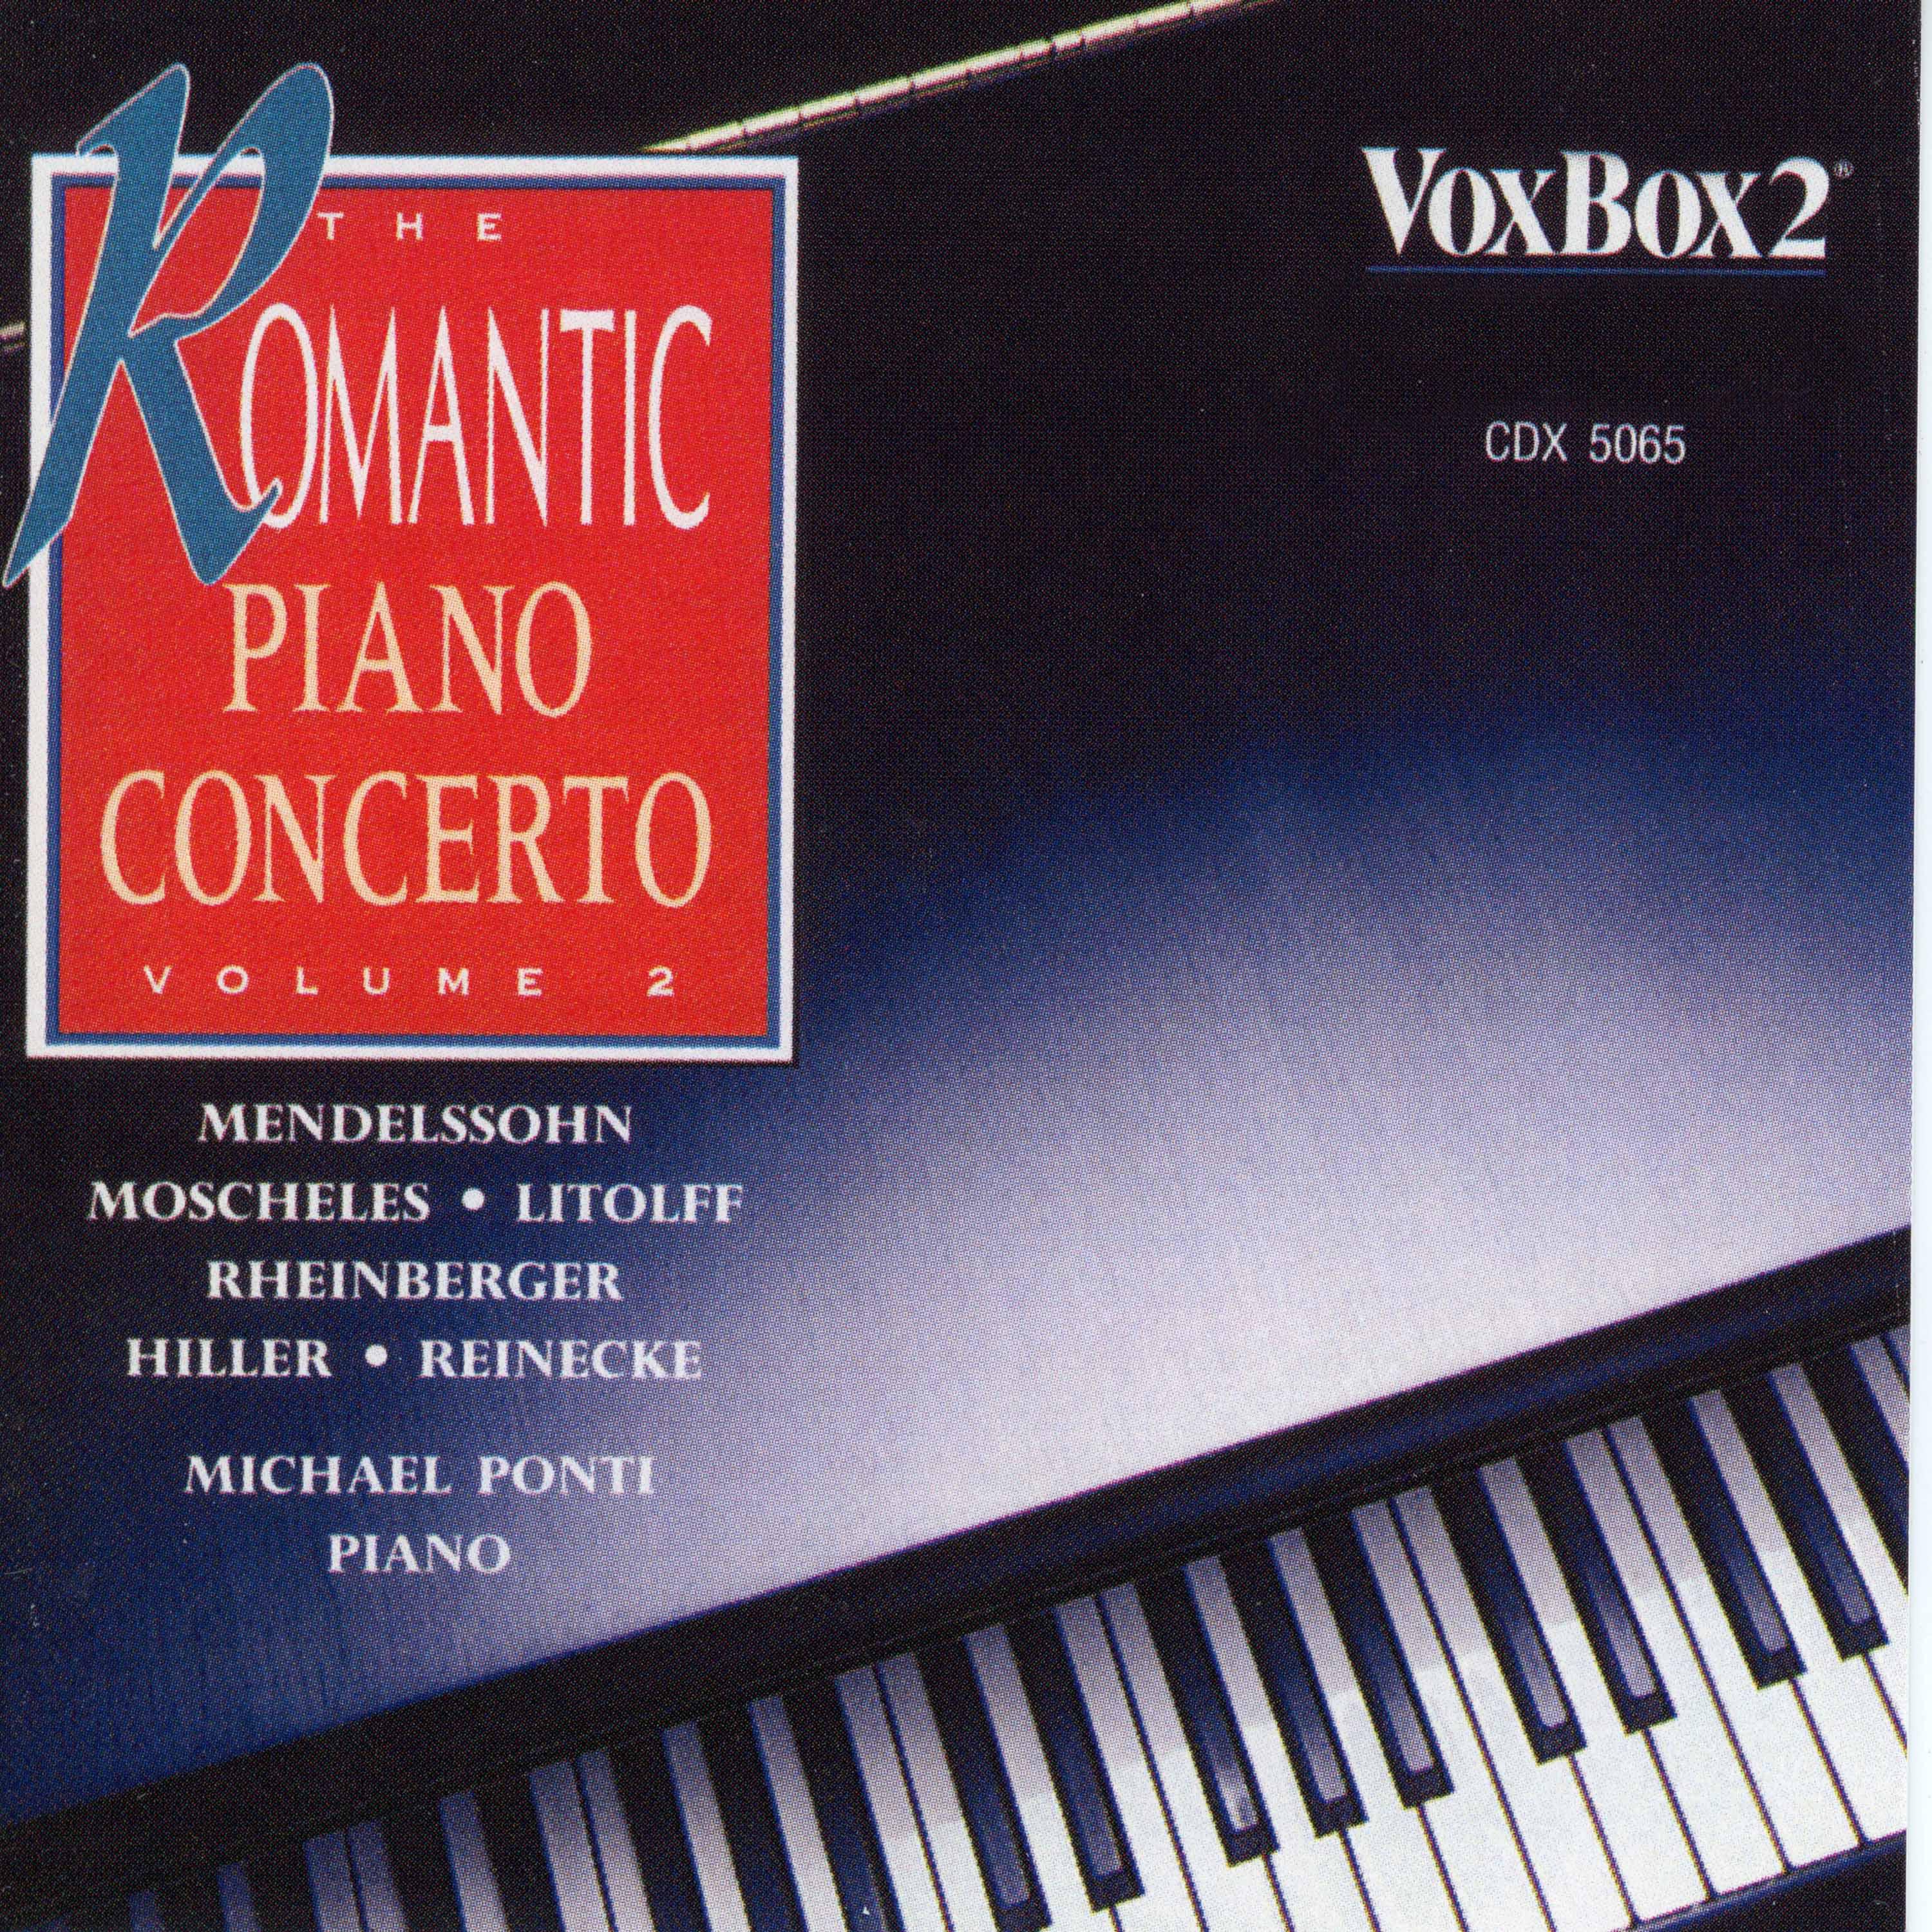 Piano Concerto in A-Flat Major, Op. 94: III. Finale. Allegro energico